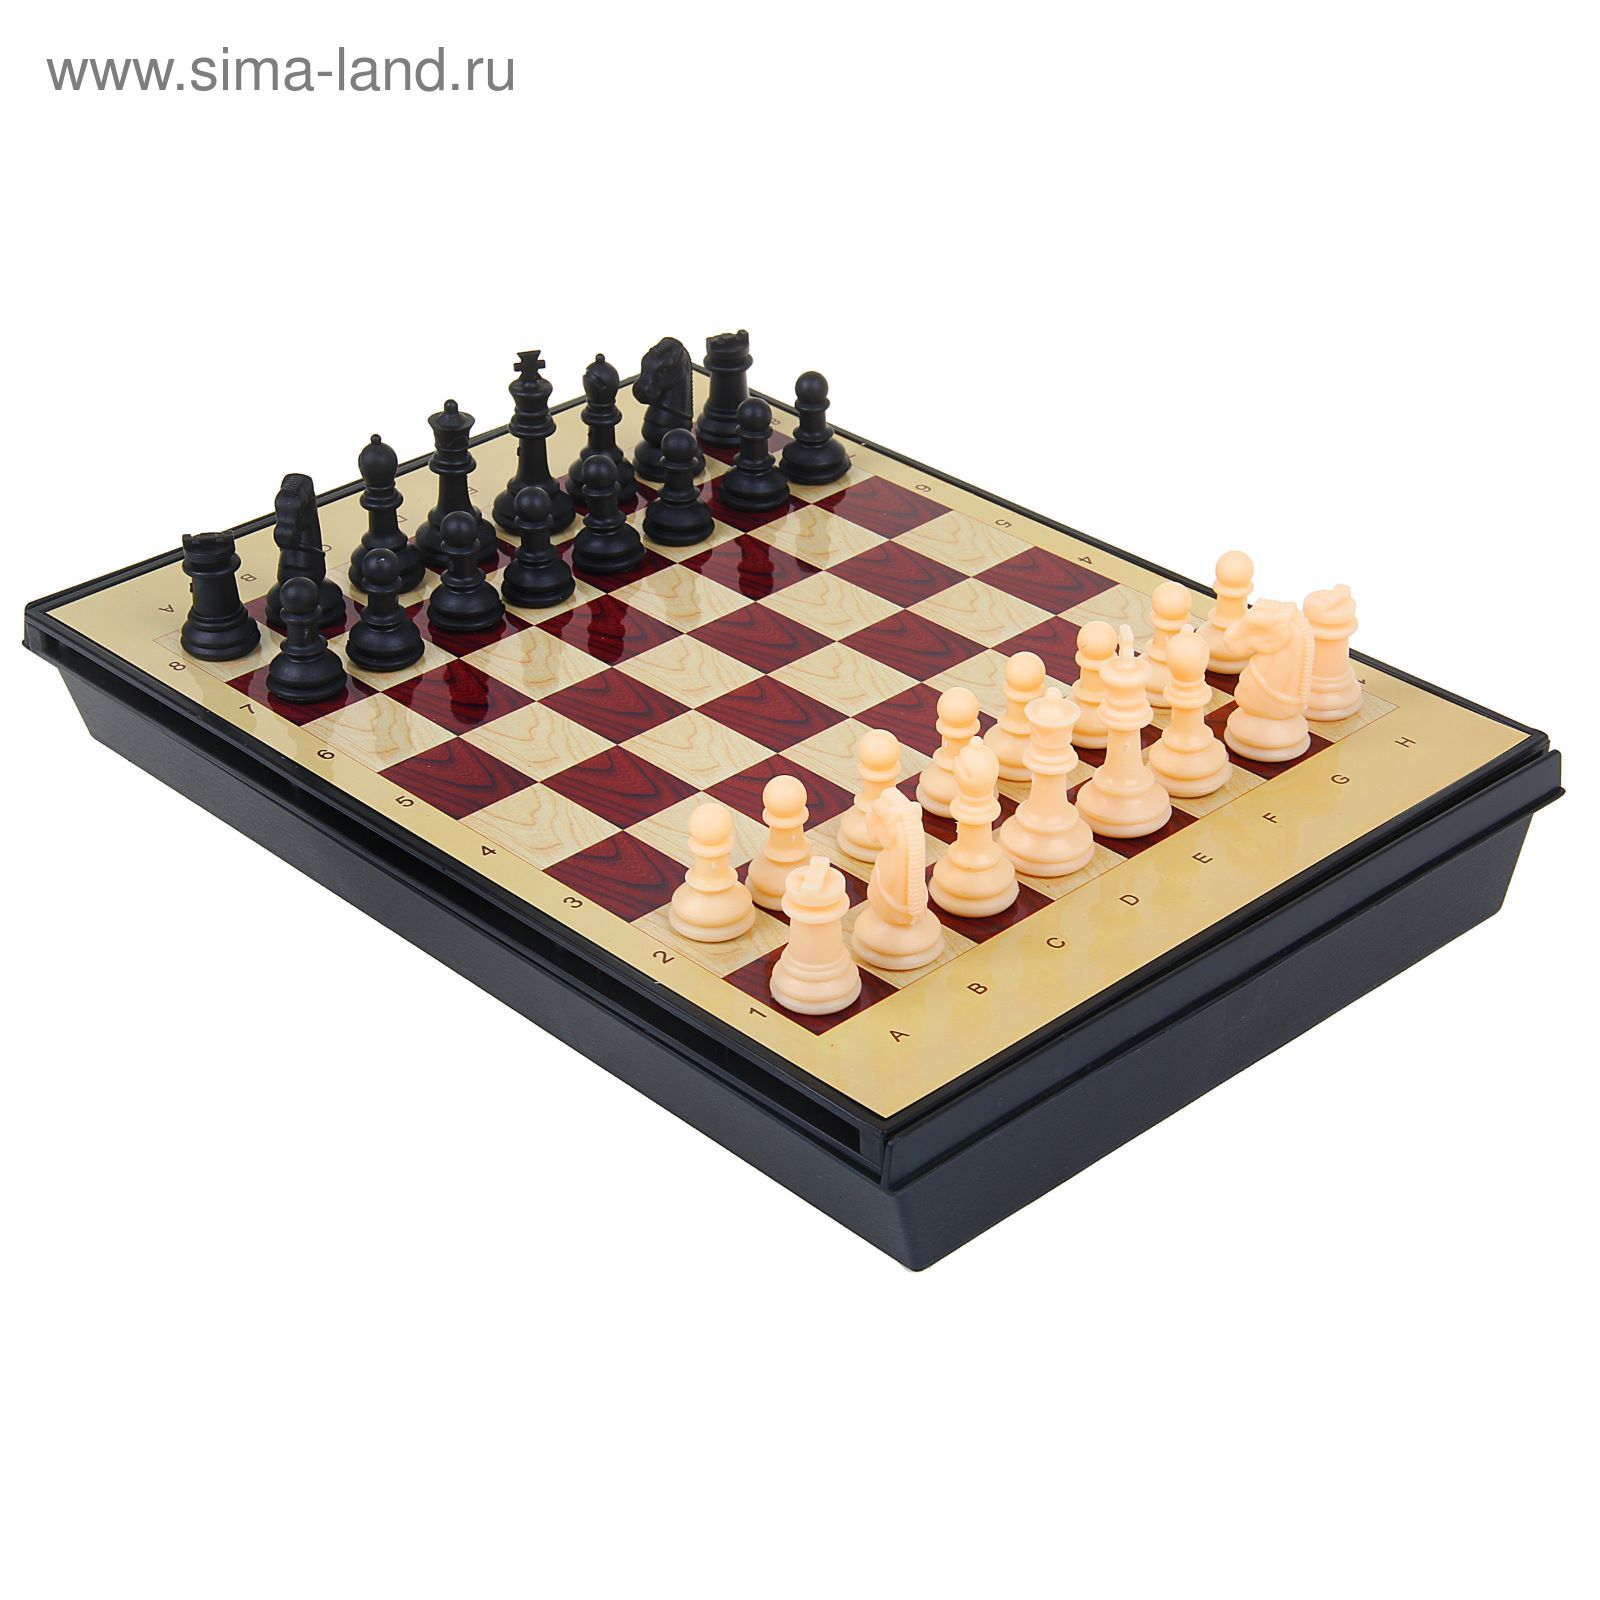 Игра настольная "Шахматы малые", с ящиком, магнитная, в коробке